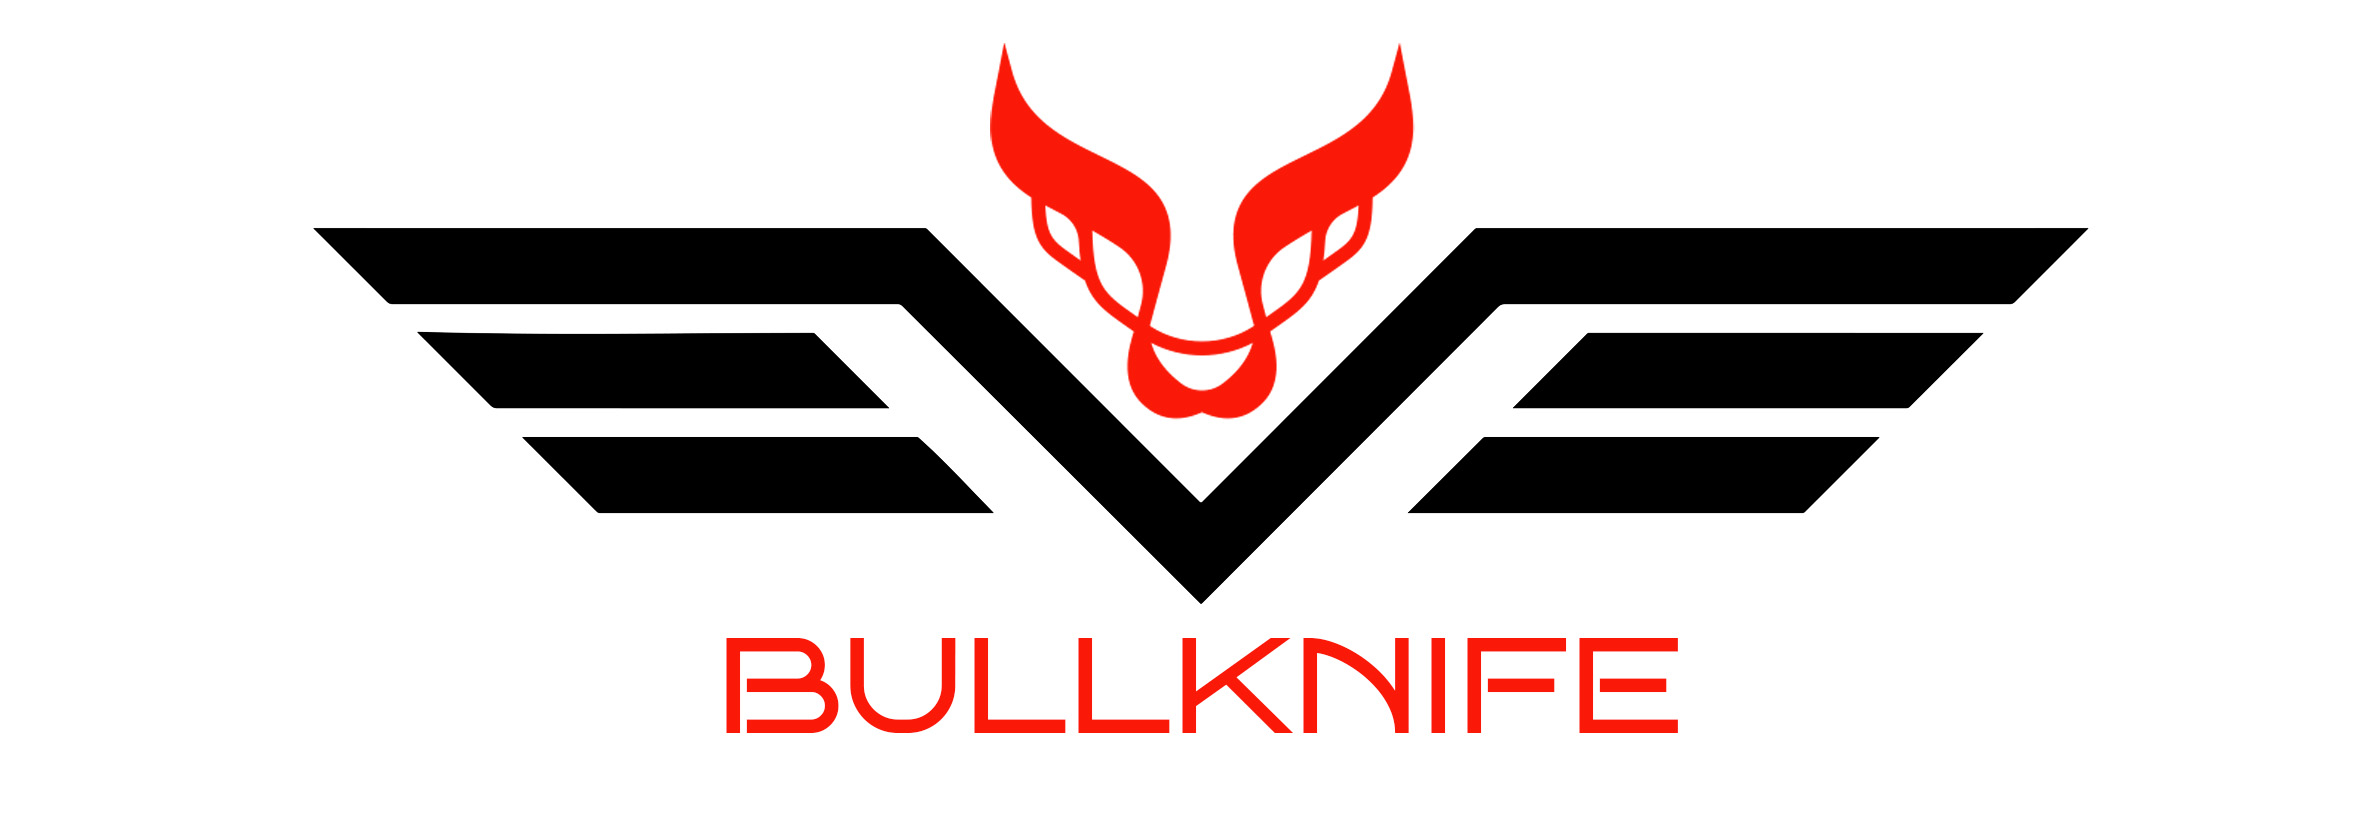 Bullknife.com | Özel Üretim Bıçak - Askeri Bıçaklar - El Yapımı Bıçak Modelleri